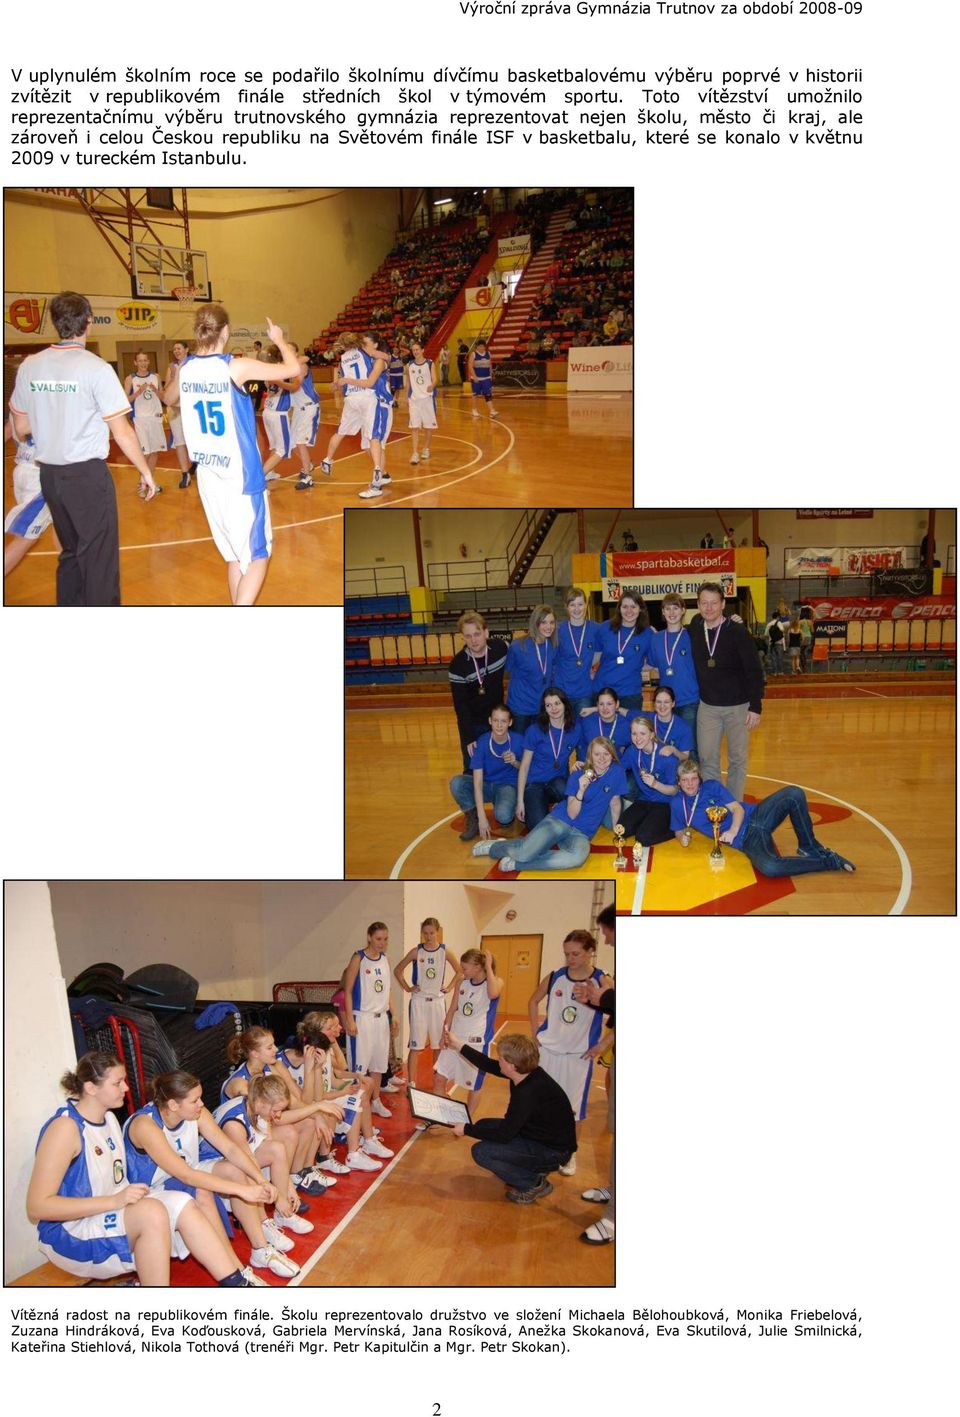 basketbalu, které se konalo v květnu 2009 v tureckém Istanbulu. Vítězná radost na republikovém finále.